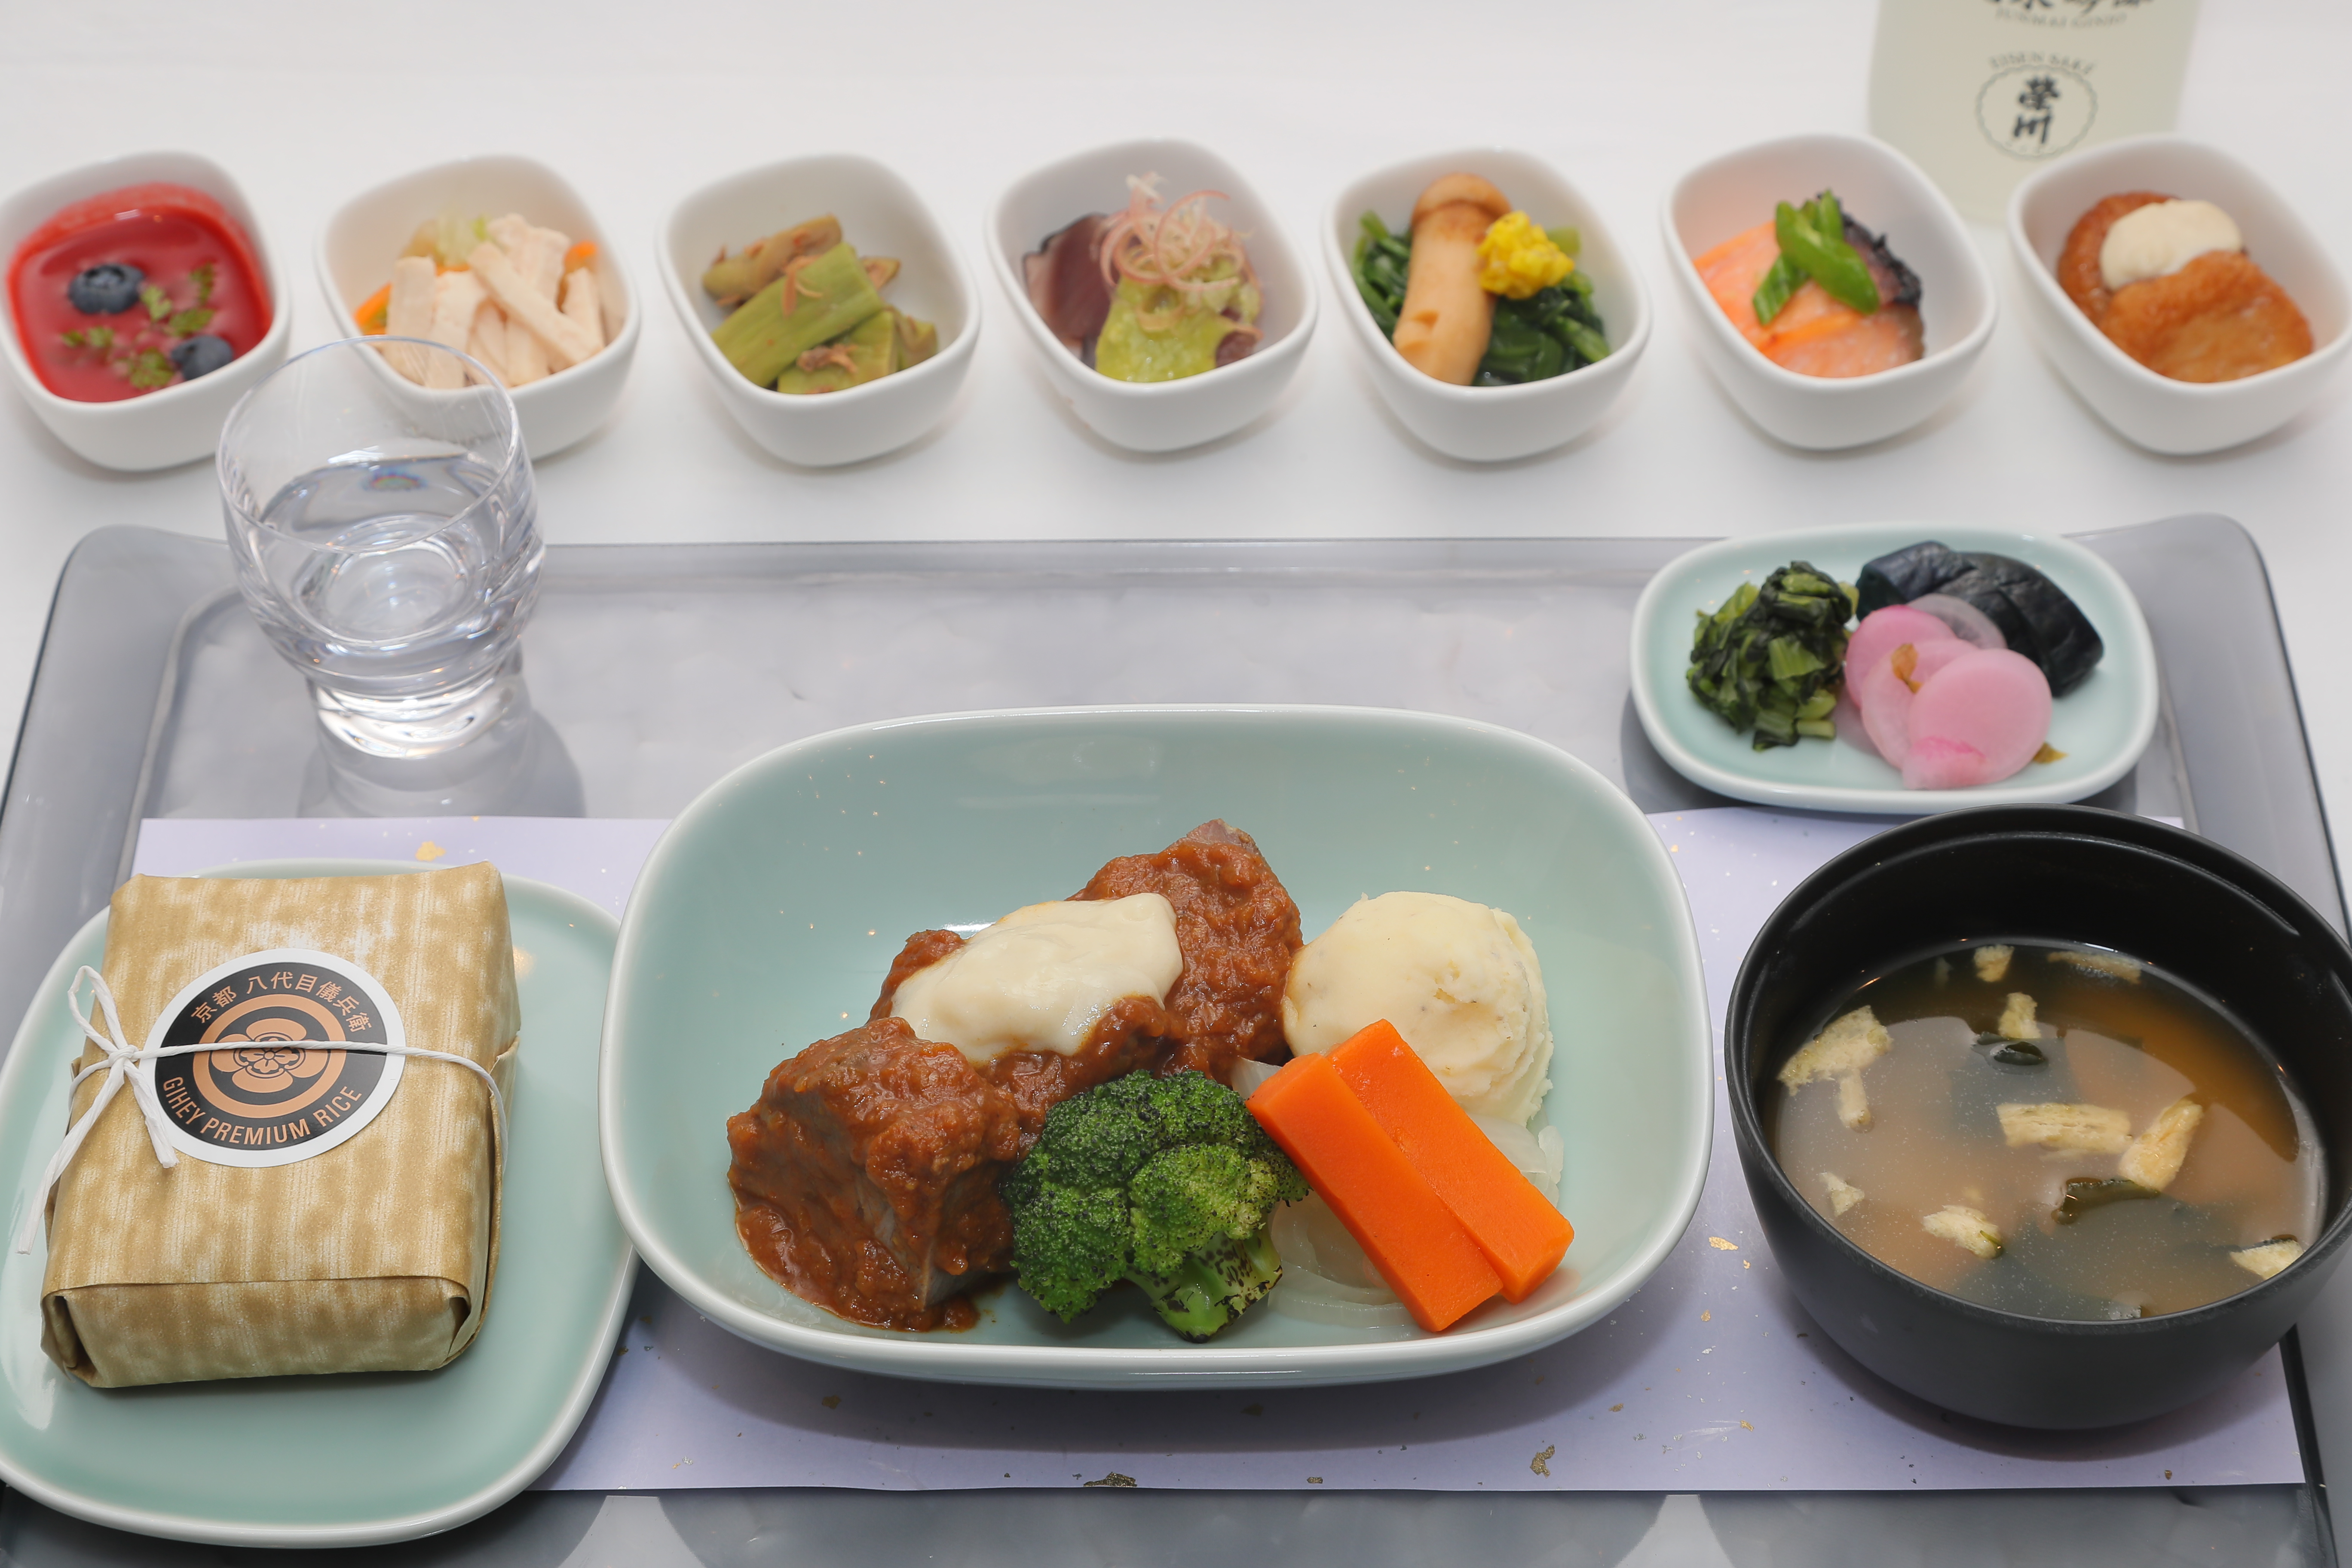 デルタ航空 ビジネスクラス機内食に 京の米老舗 八代目儀兵衛 の最高級ブレンド米を採用 デルタ航空のプレスリリース